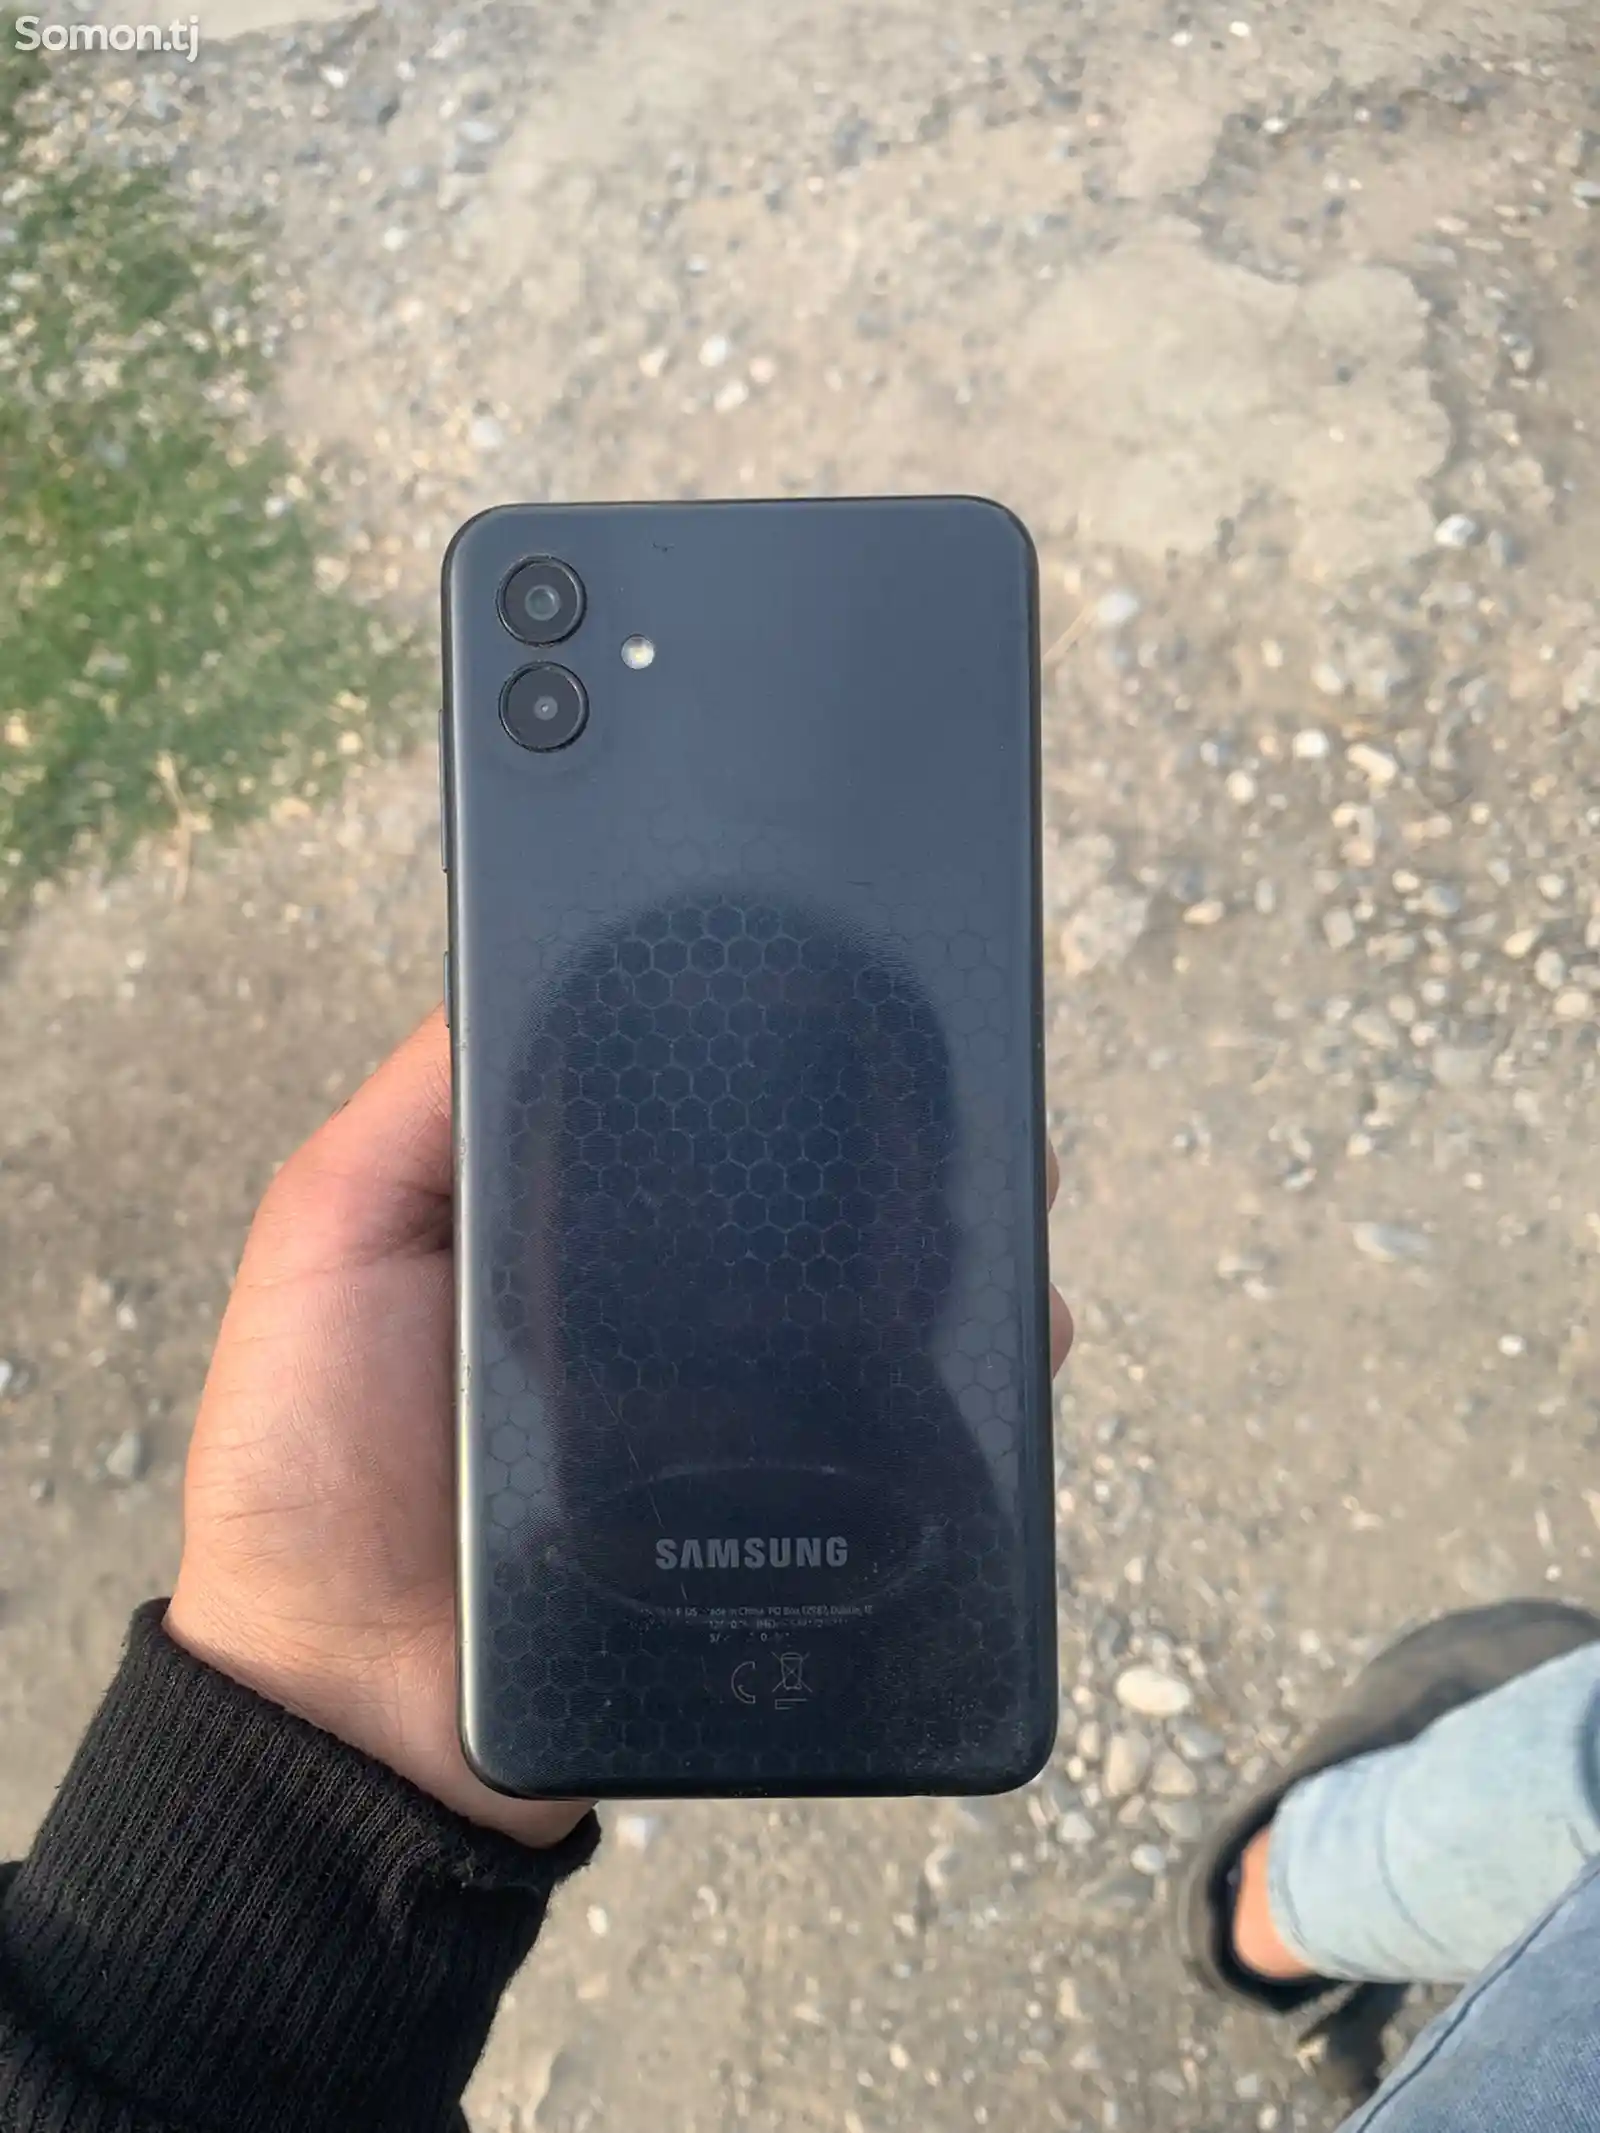 Samsung Galaxy A04-3